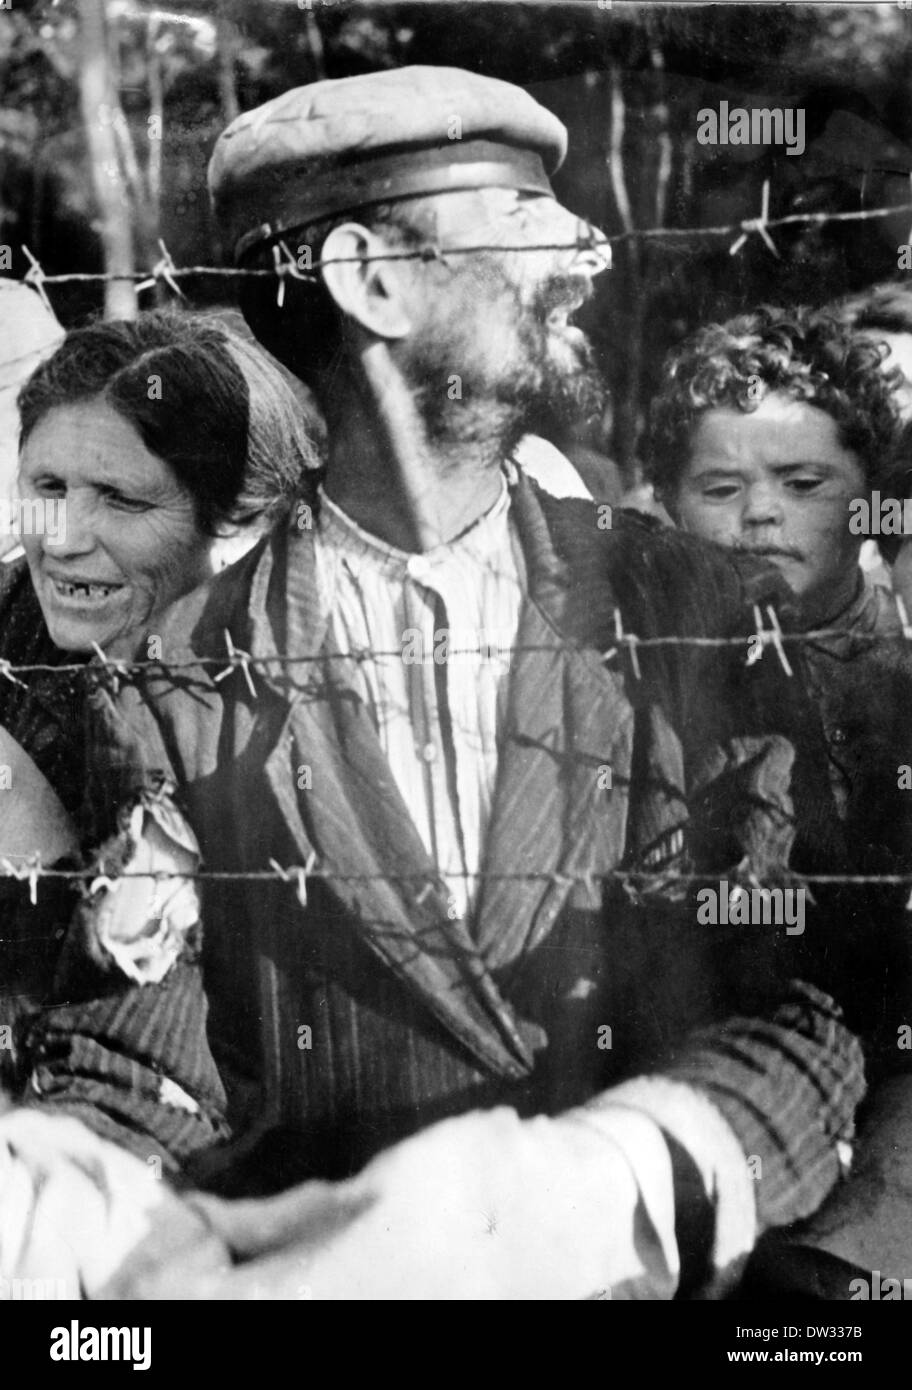 Prigionieri ebrei a stare dietro un filo spinato in un campo di concentramento in Bessarabia (oggi la Romania), attorno al 1941/1942. Con l'attacco tedesco all Unione Sovietica nel giugno 1941, truppe rumene (Armata Romana) riconquistata Bessarabia, che fu occupata dai sovietici. In questo contesto la popolazione ebraica fu accusato di sympathizing con l Unione Sovietica, da essi considerata come liberatori nella luce di Hitler antisemita politica di sterminio in 1940. Come risultato nel 1941/42, il popolo ebraico sono stati deportati in campi di raccolta stabilito nella Transnistria (ora Ucraina e Moldavia), che era stato controllore Foto Stock